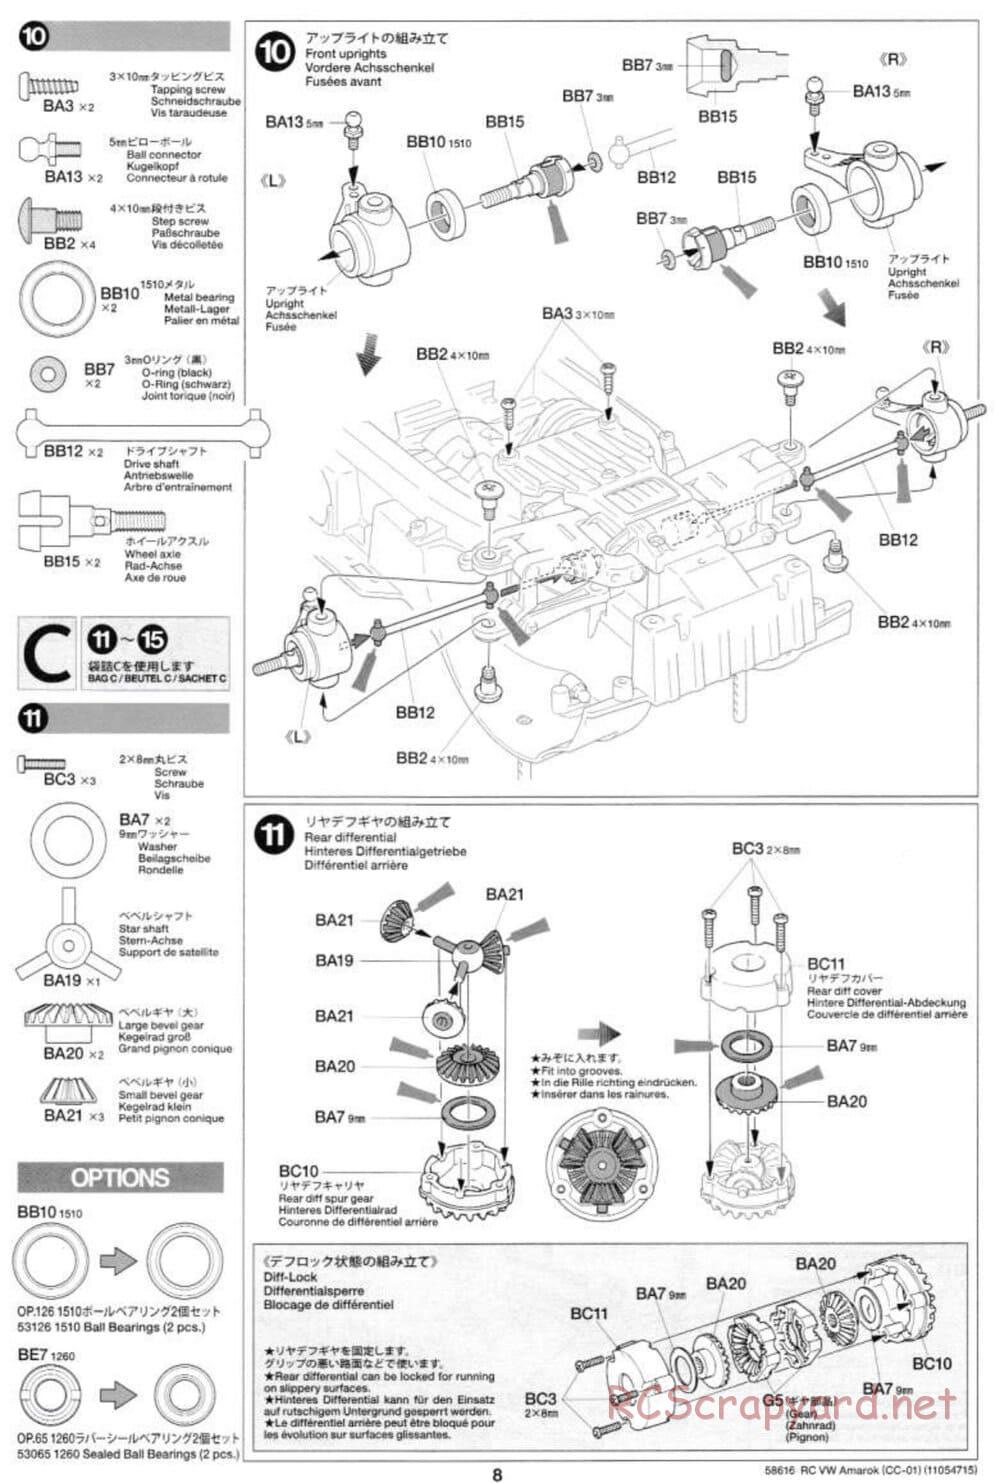 Tamiya - Volkswagen Amarok - CC-01 Chassis - Manual - Page 8